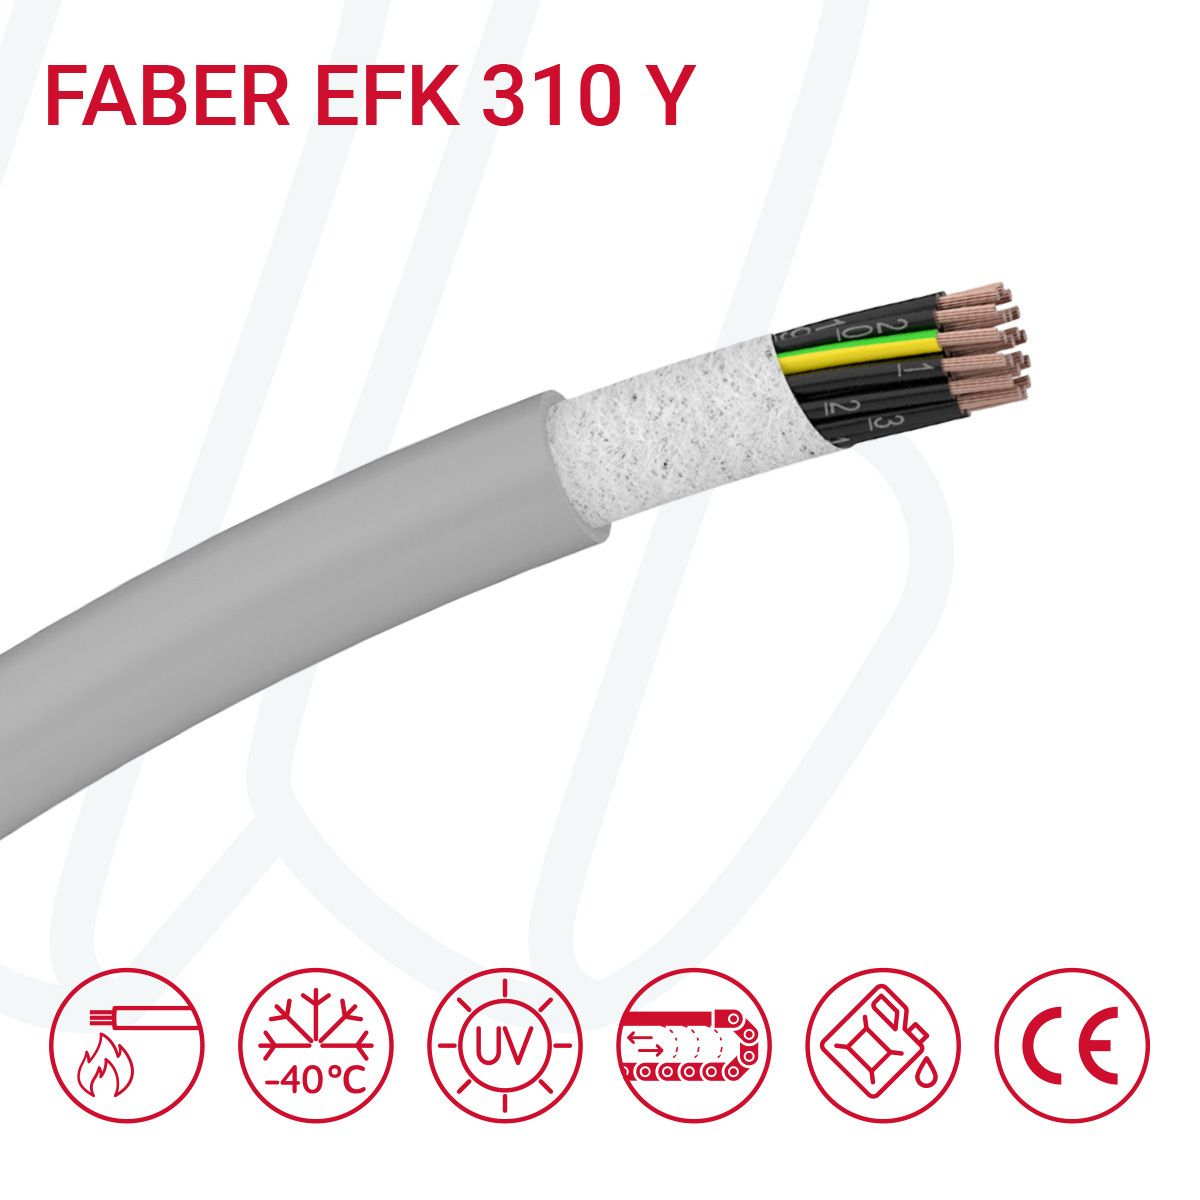 Кабель FABER EFK 310 Y 12G1 cUL сірий, 12, 1.0